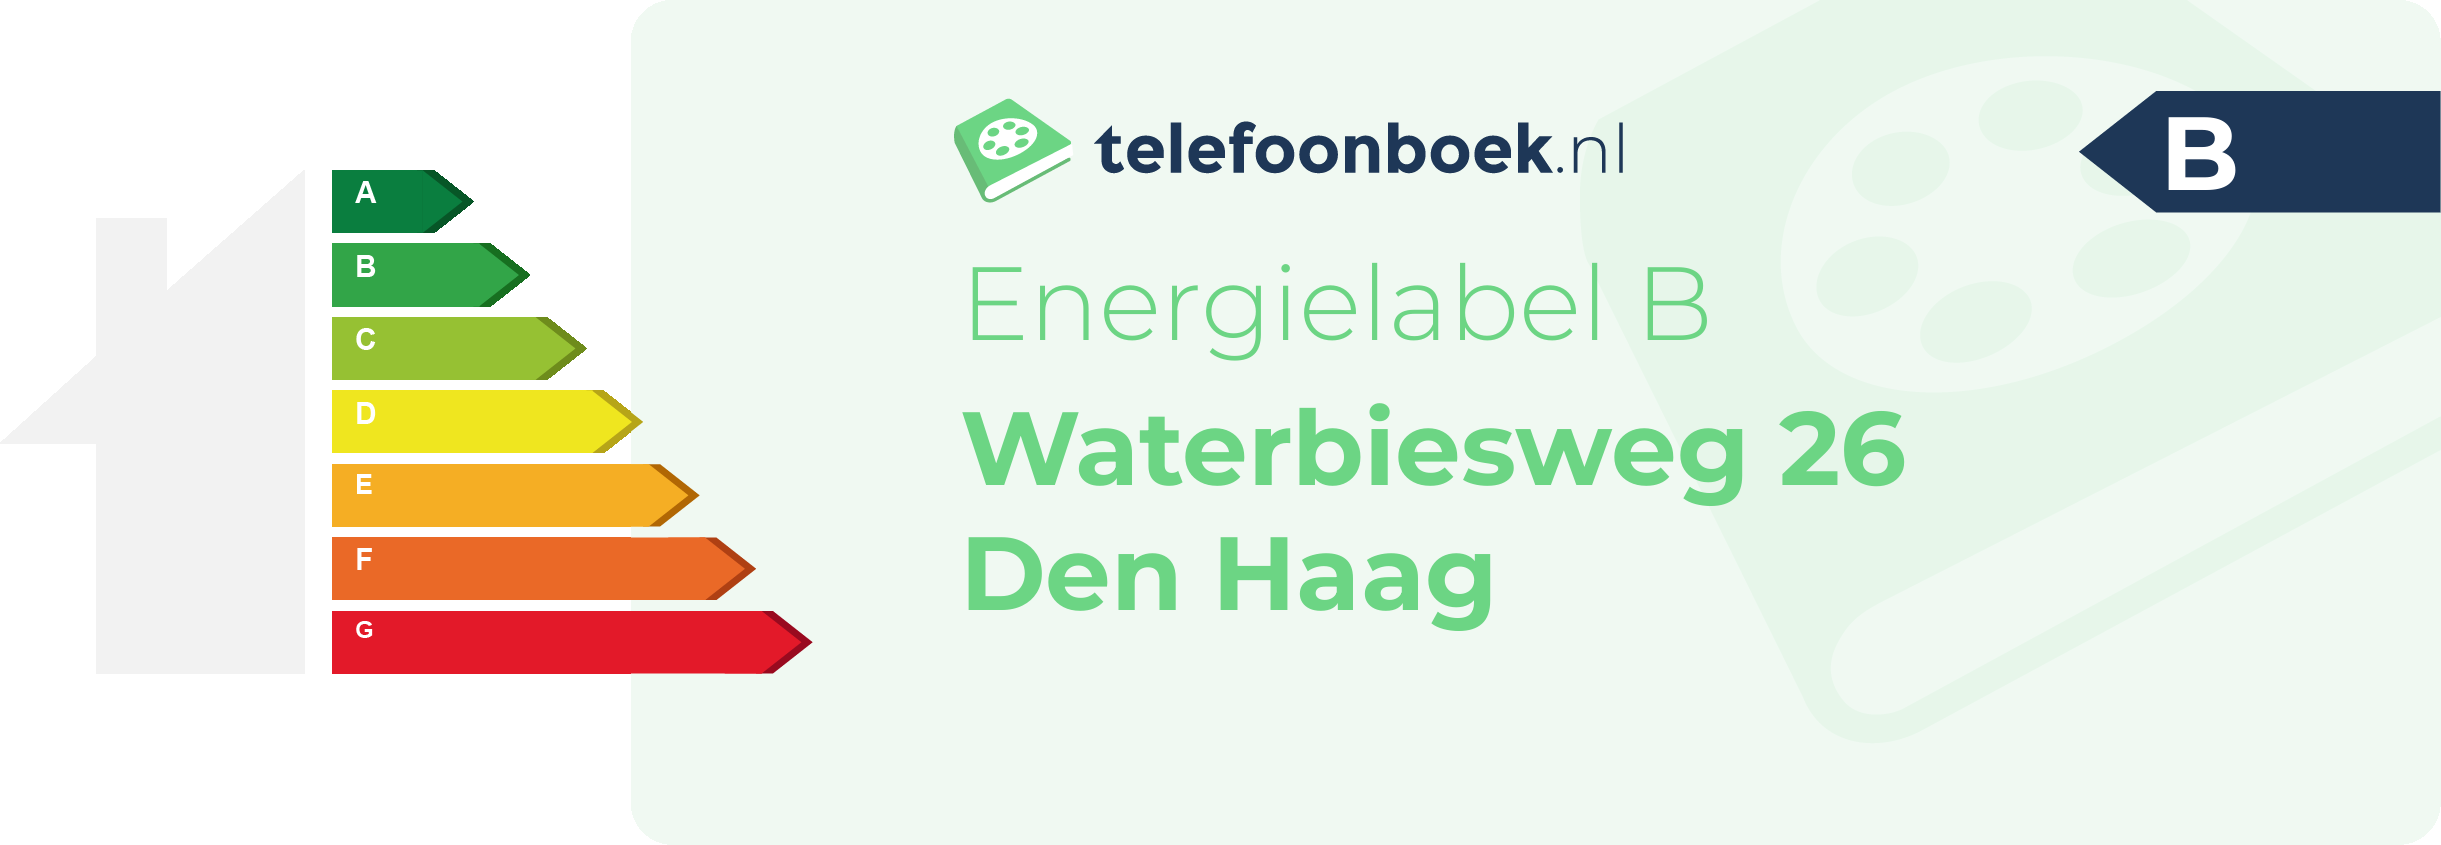 Energielabel Waterbiesweg 26 Den Haag